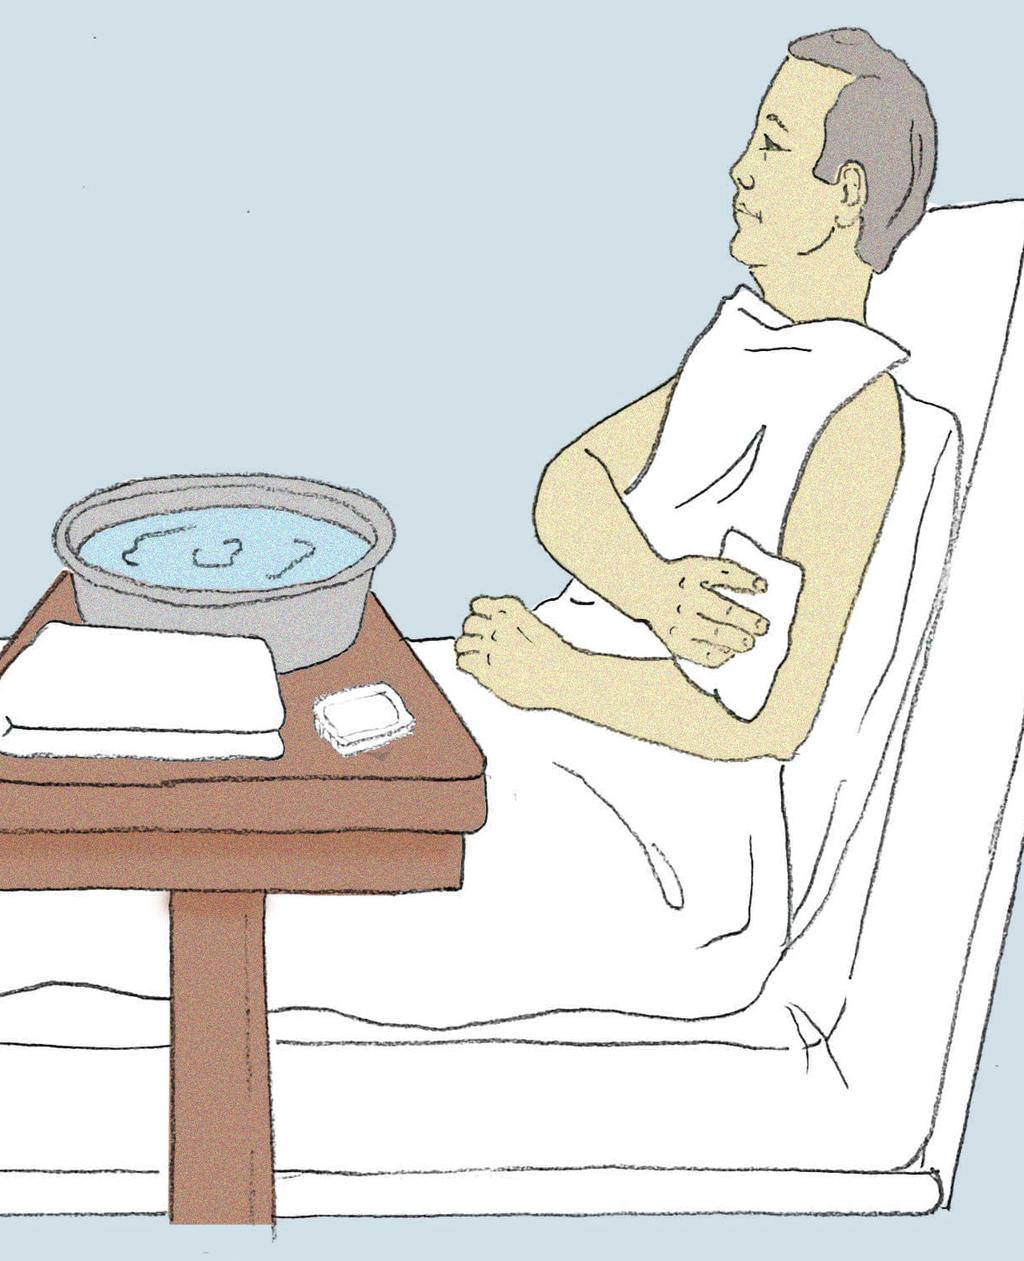 TUVALET BAKIMI Yatağa bağımlı yaşlı hastalar için tuvalet çok önemli bir ihtiyaçtır. Onlar bu ihtiyaçlarını kendileri karşılayamazlar, bir yardımcıya ihtiyaç duyarlar.